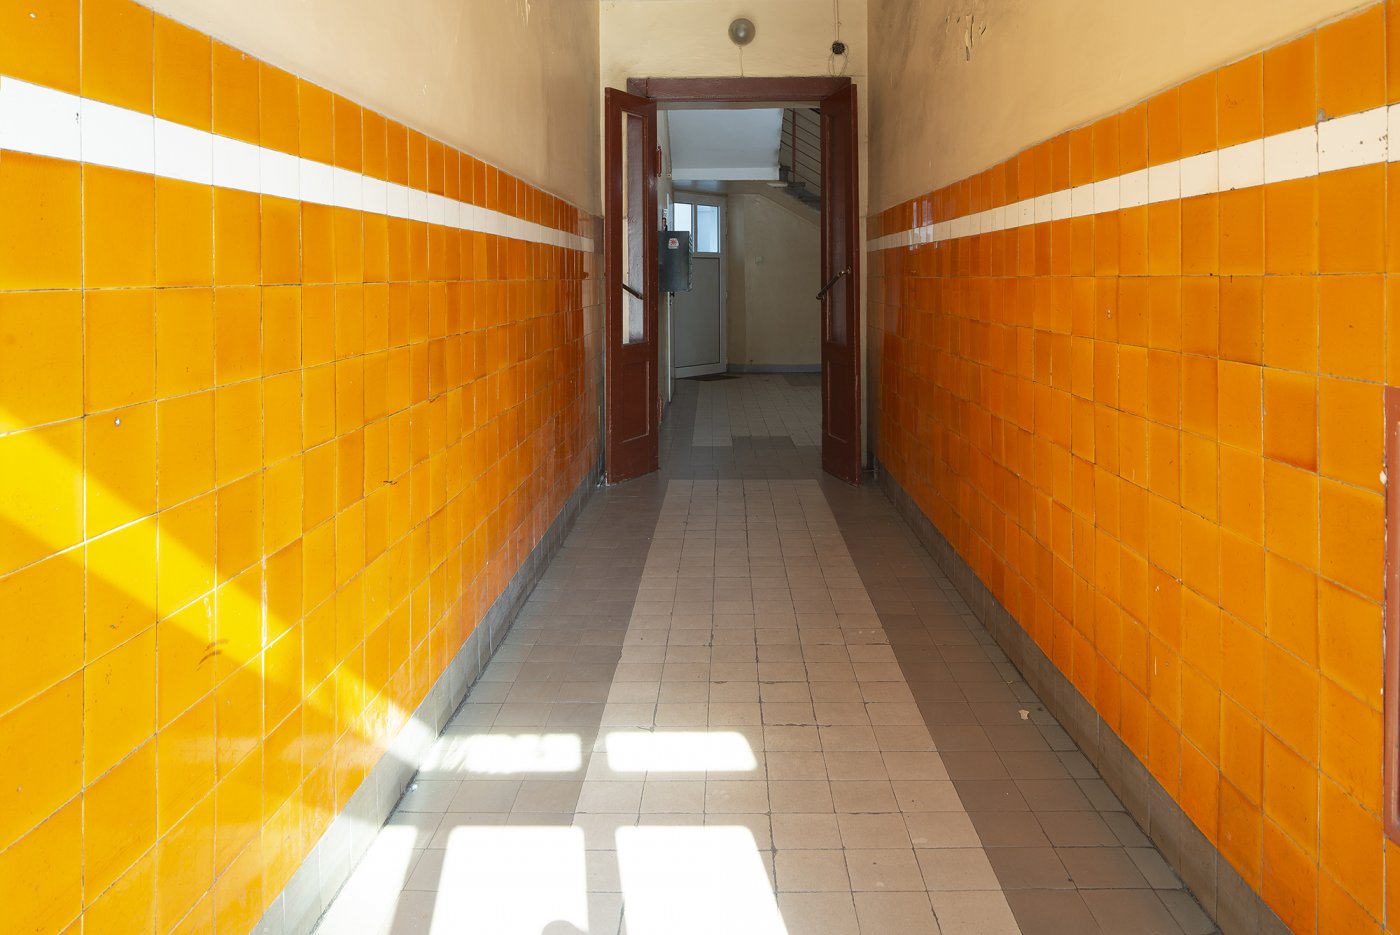 Strefa wejściowa w kamienicy przy Skwerze Kościuszki 14, dolne partie ścian wykończone ceramicznymi pomarańczowymi płytkami z wykończeniem z białym paskiem.